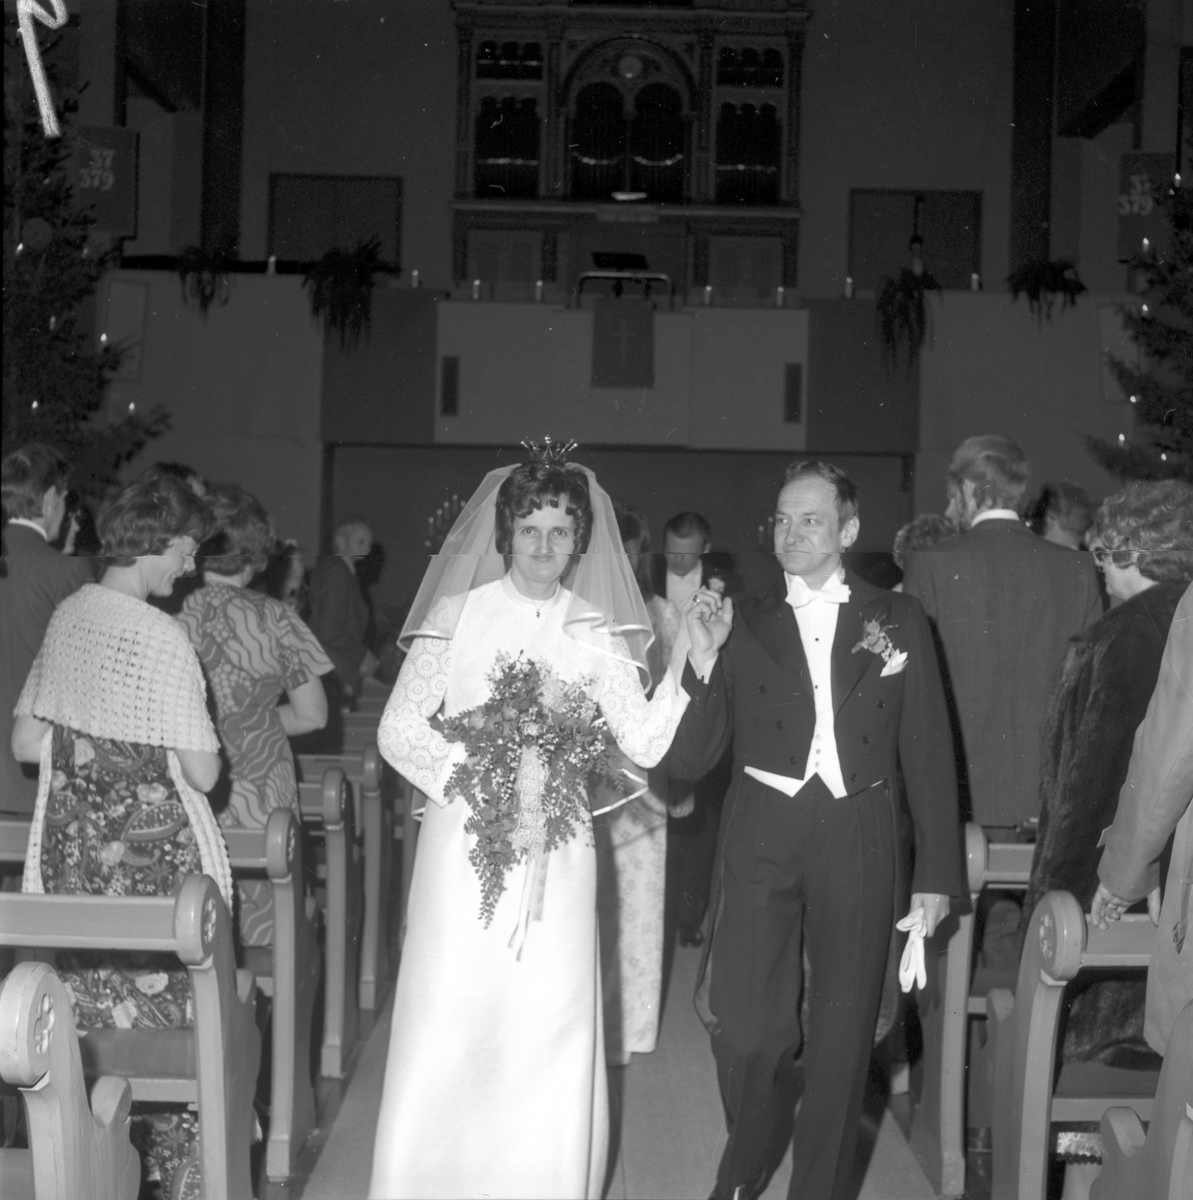 Alvenhags bröllop med bröllopsfest. Den 29 december 1972
